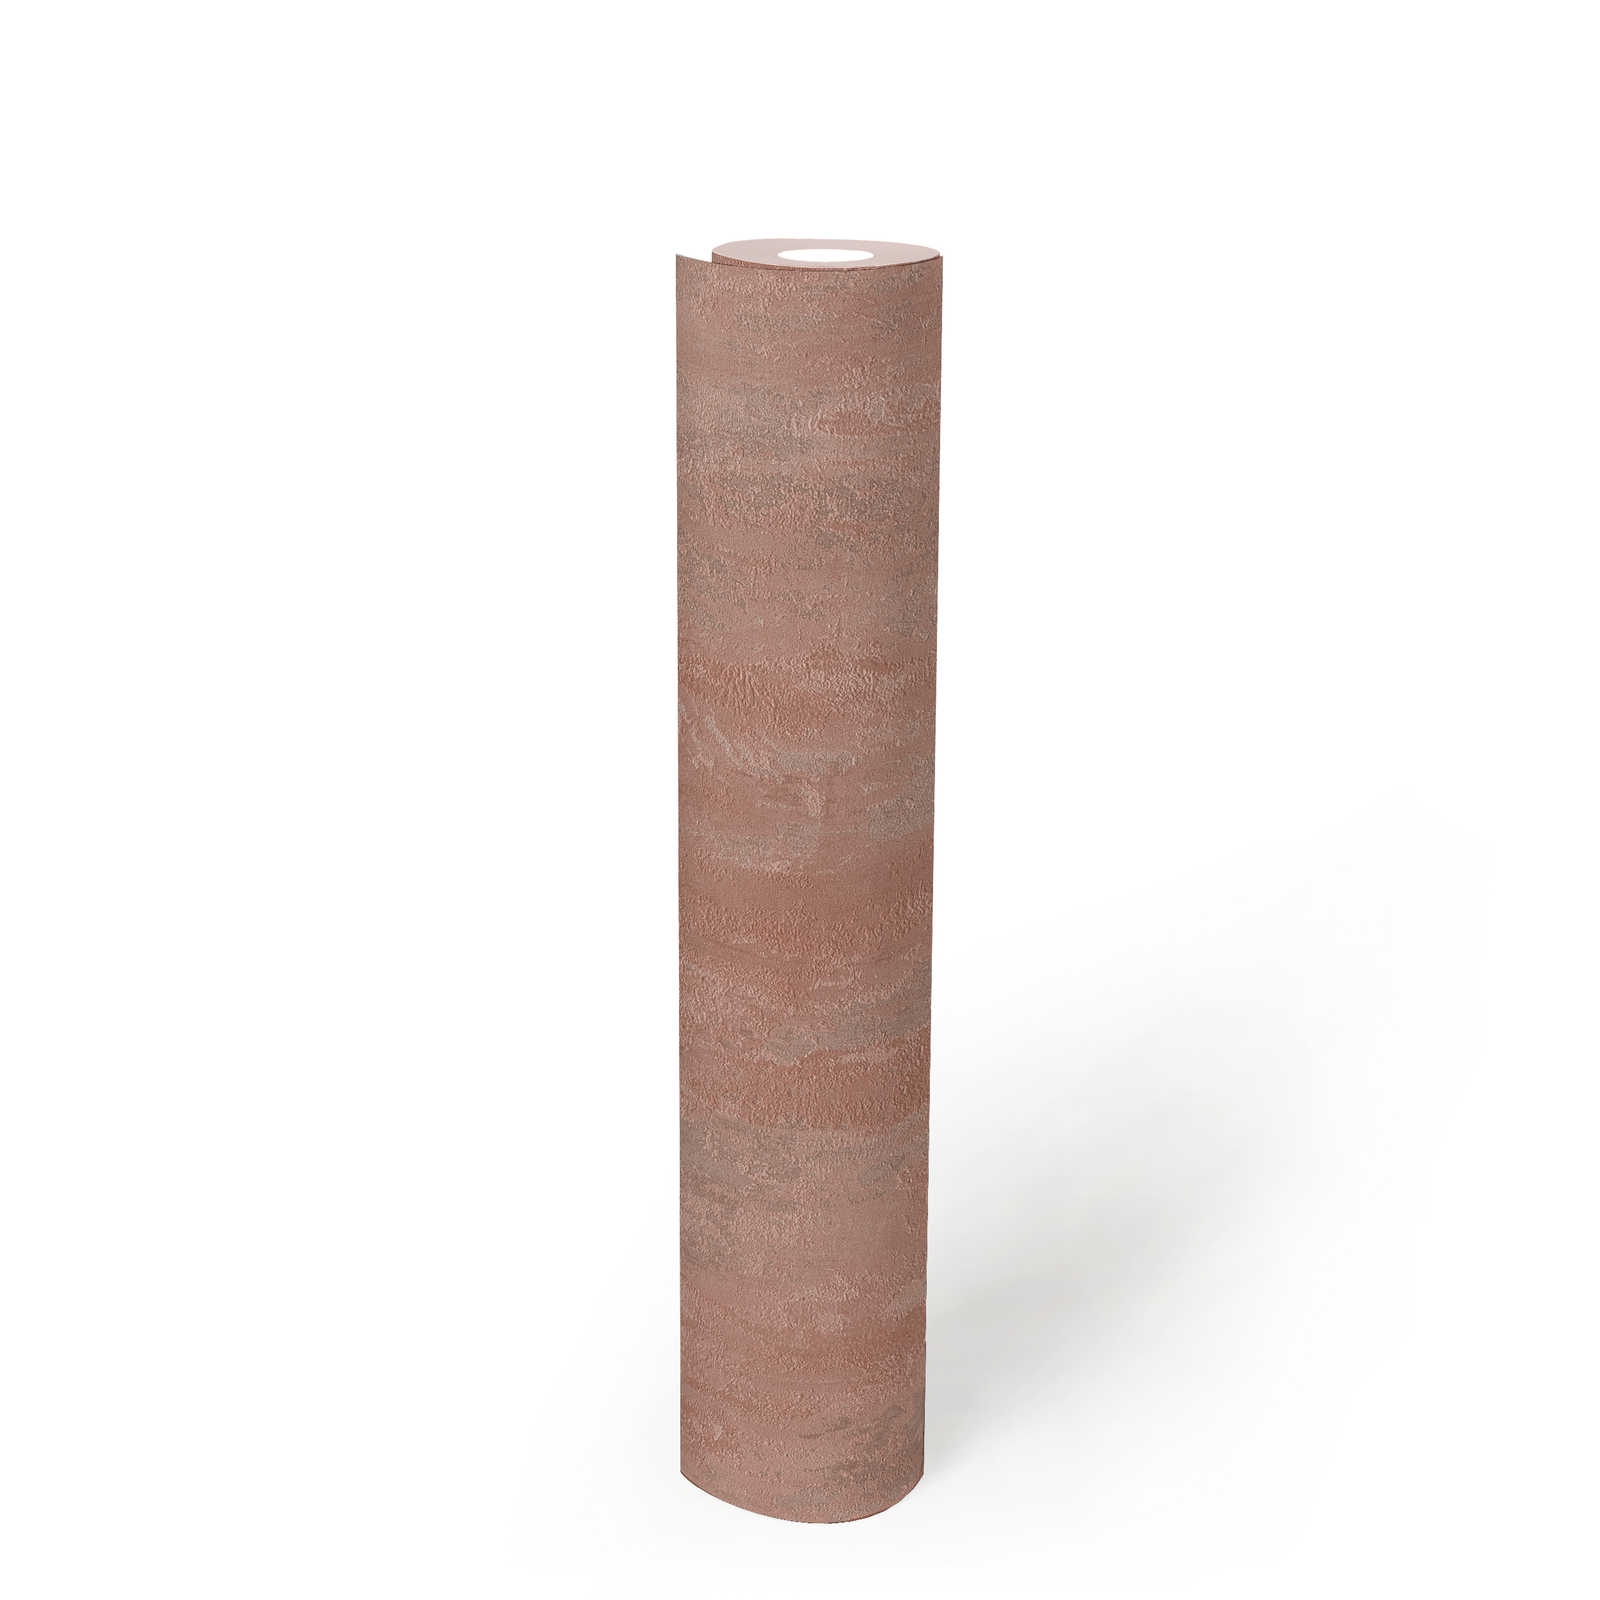             behangpapier industriële stijl met textuureffect - metallic, roze
        